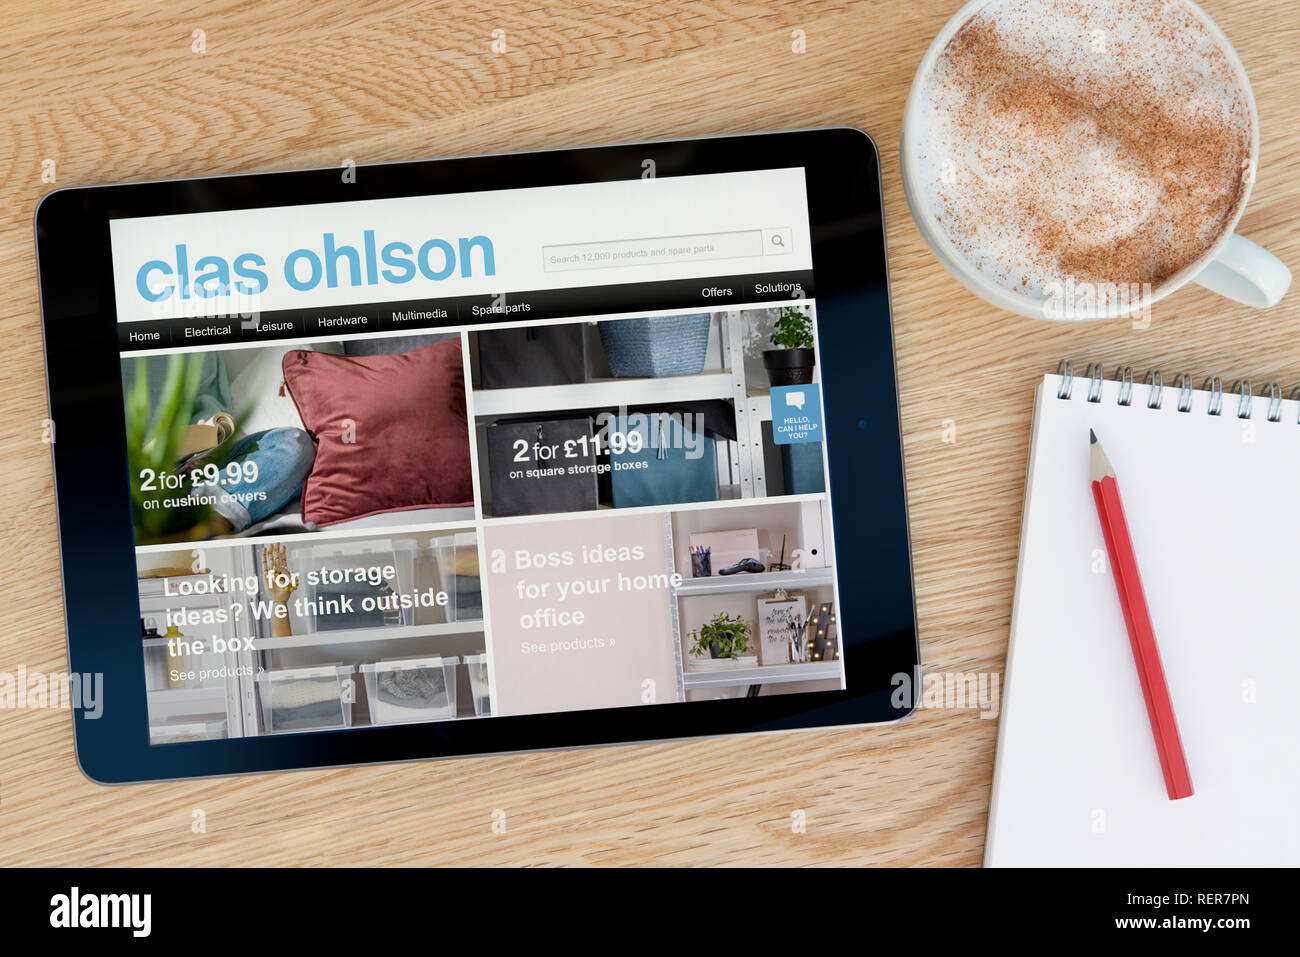 Die Clas Ohlson website Funktionen auf einem iPad Tablet Device, die auf einer hölzernen Tisch ruht (nur redaktionell). Stockfoto